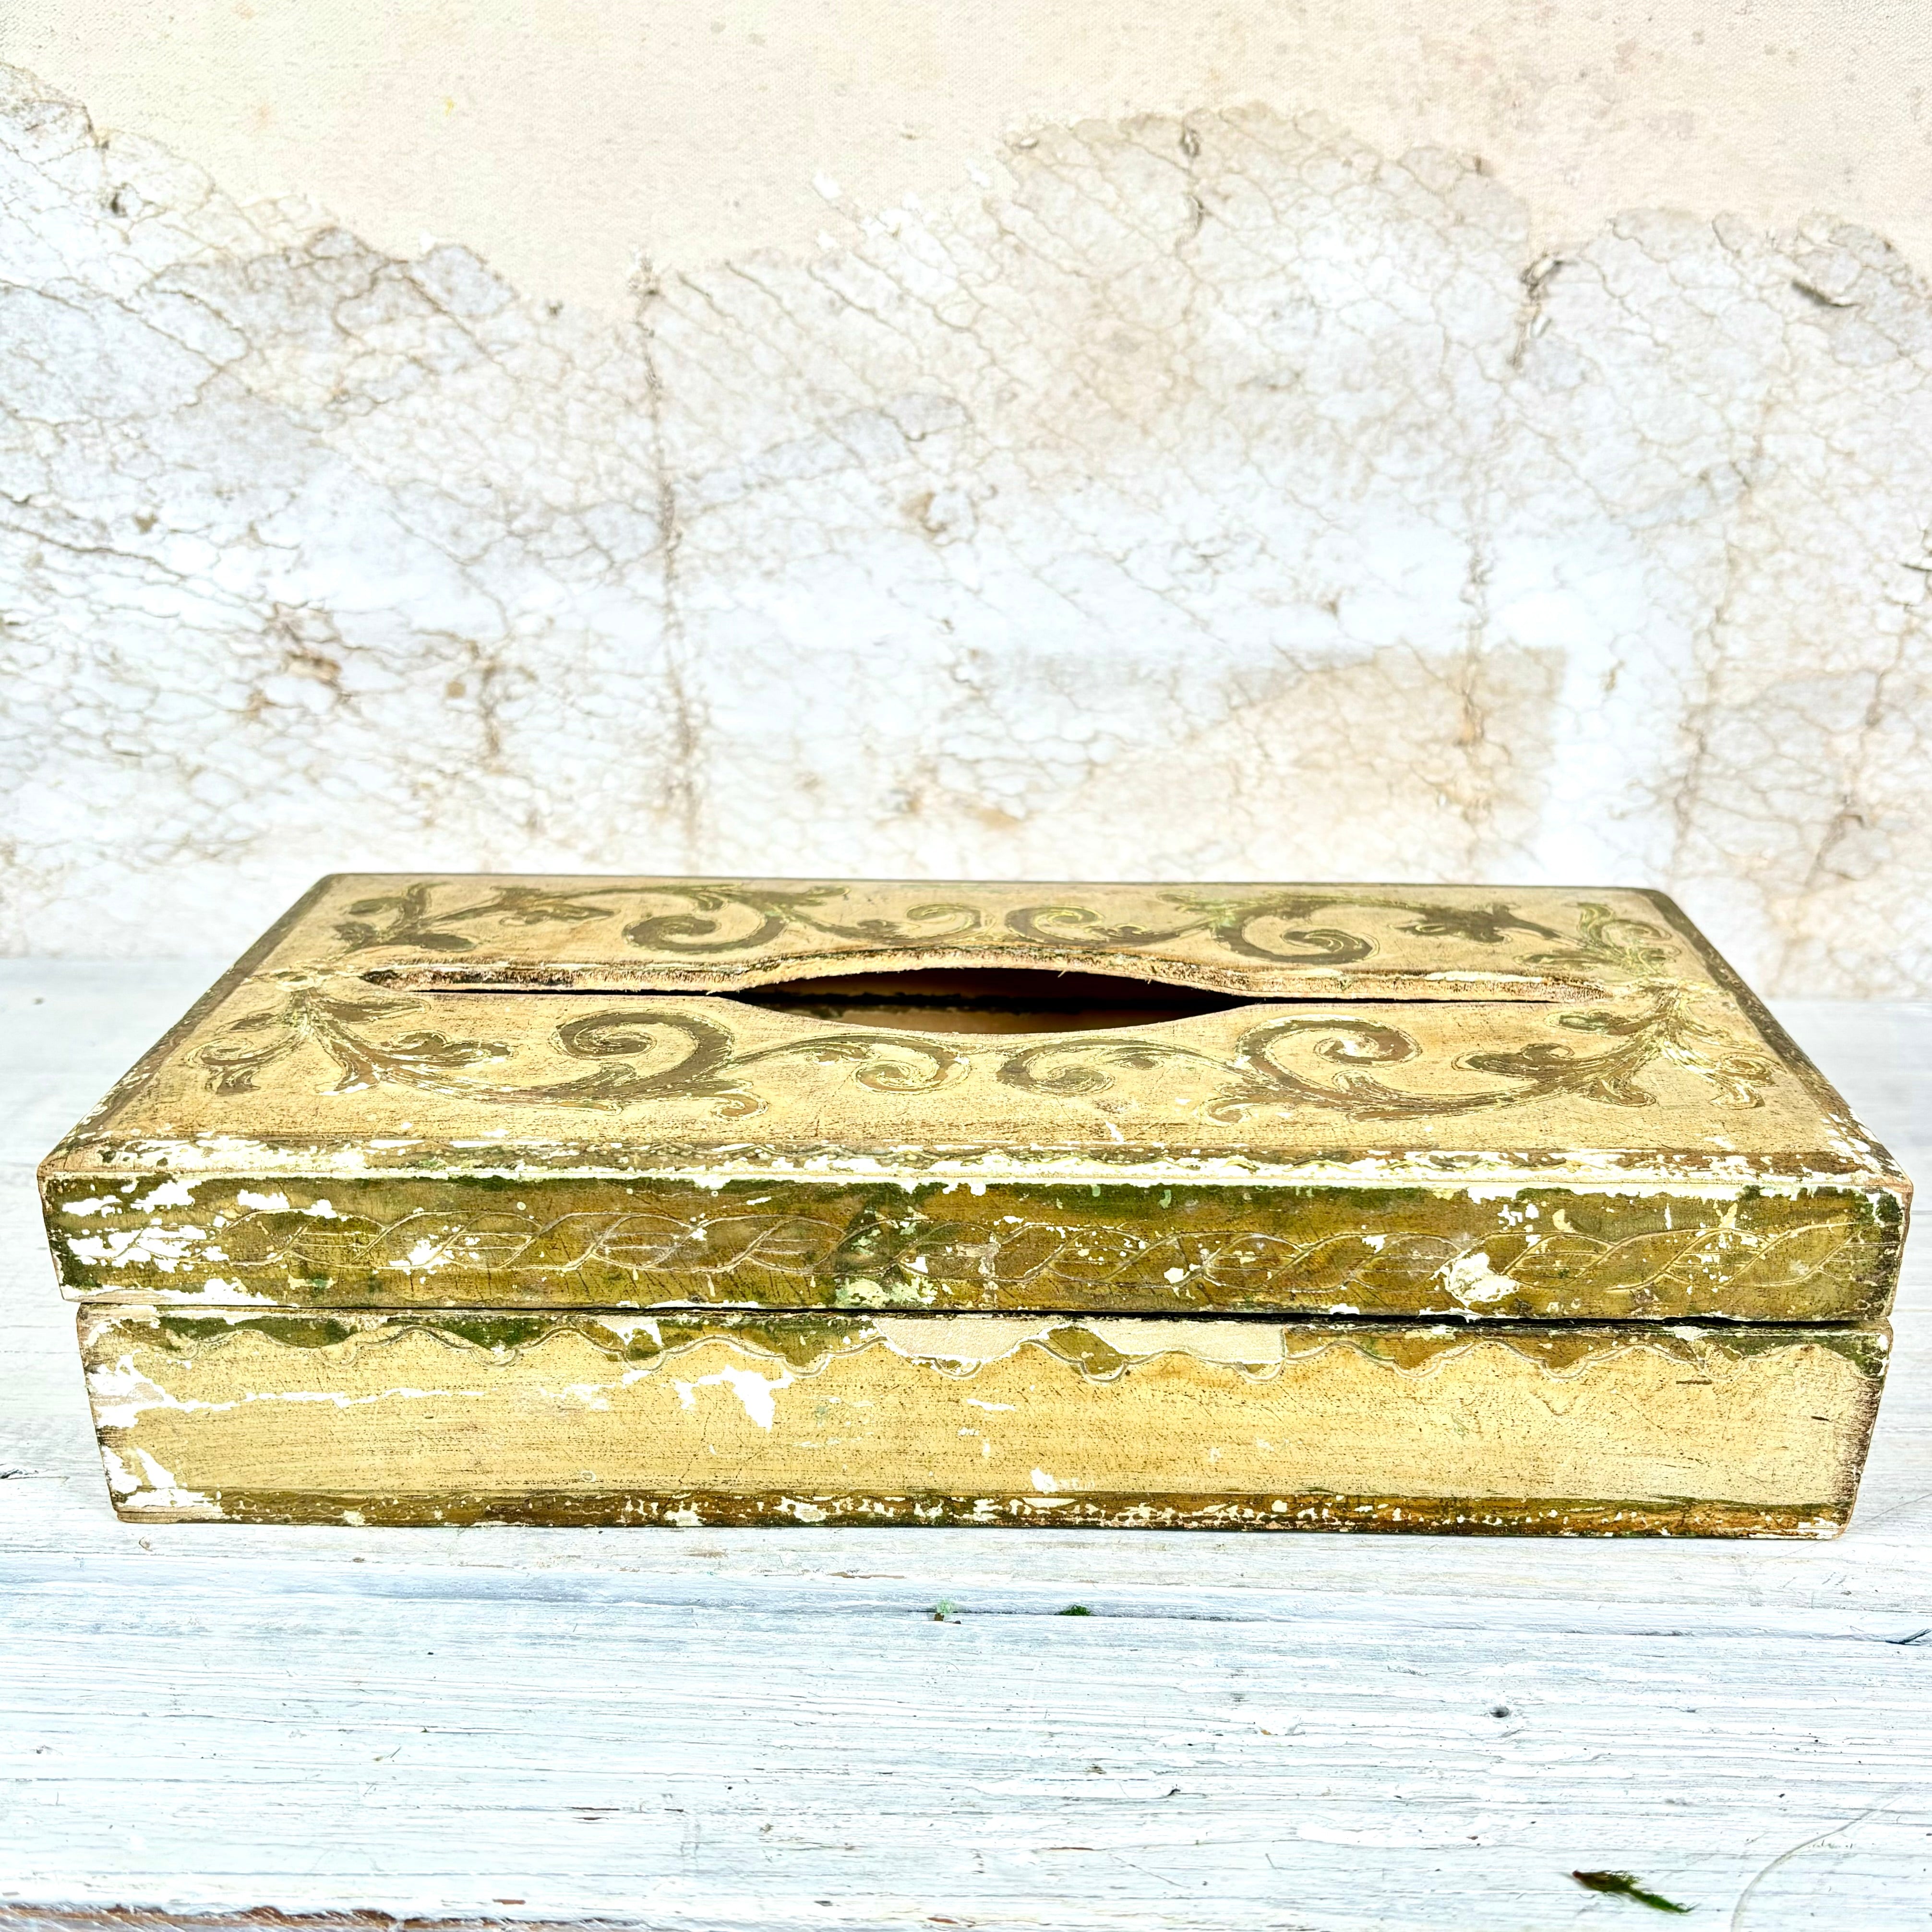 Vintage Florencia Tissue Box